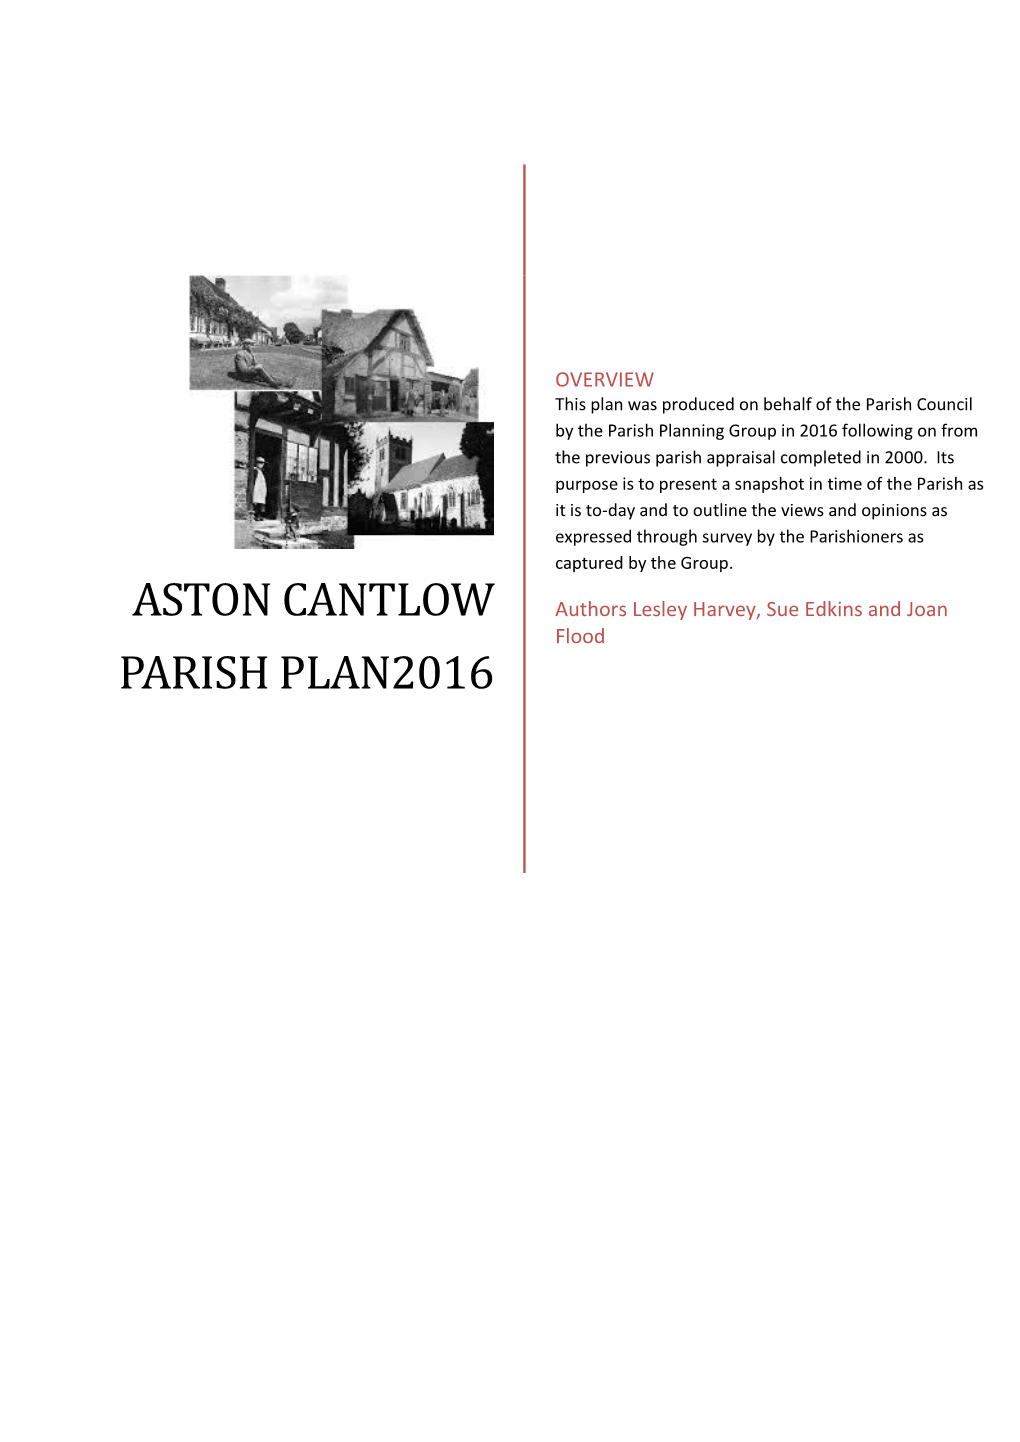 Aston Cantlow Parish Plan2016